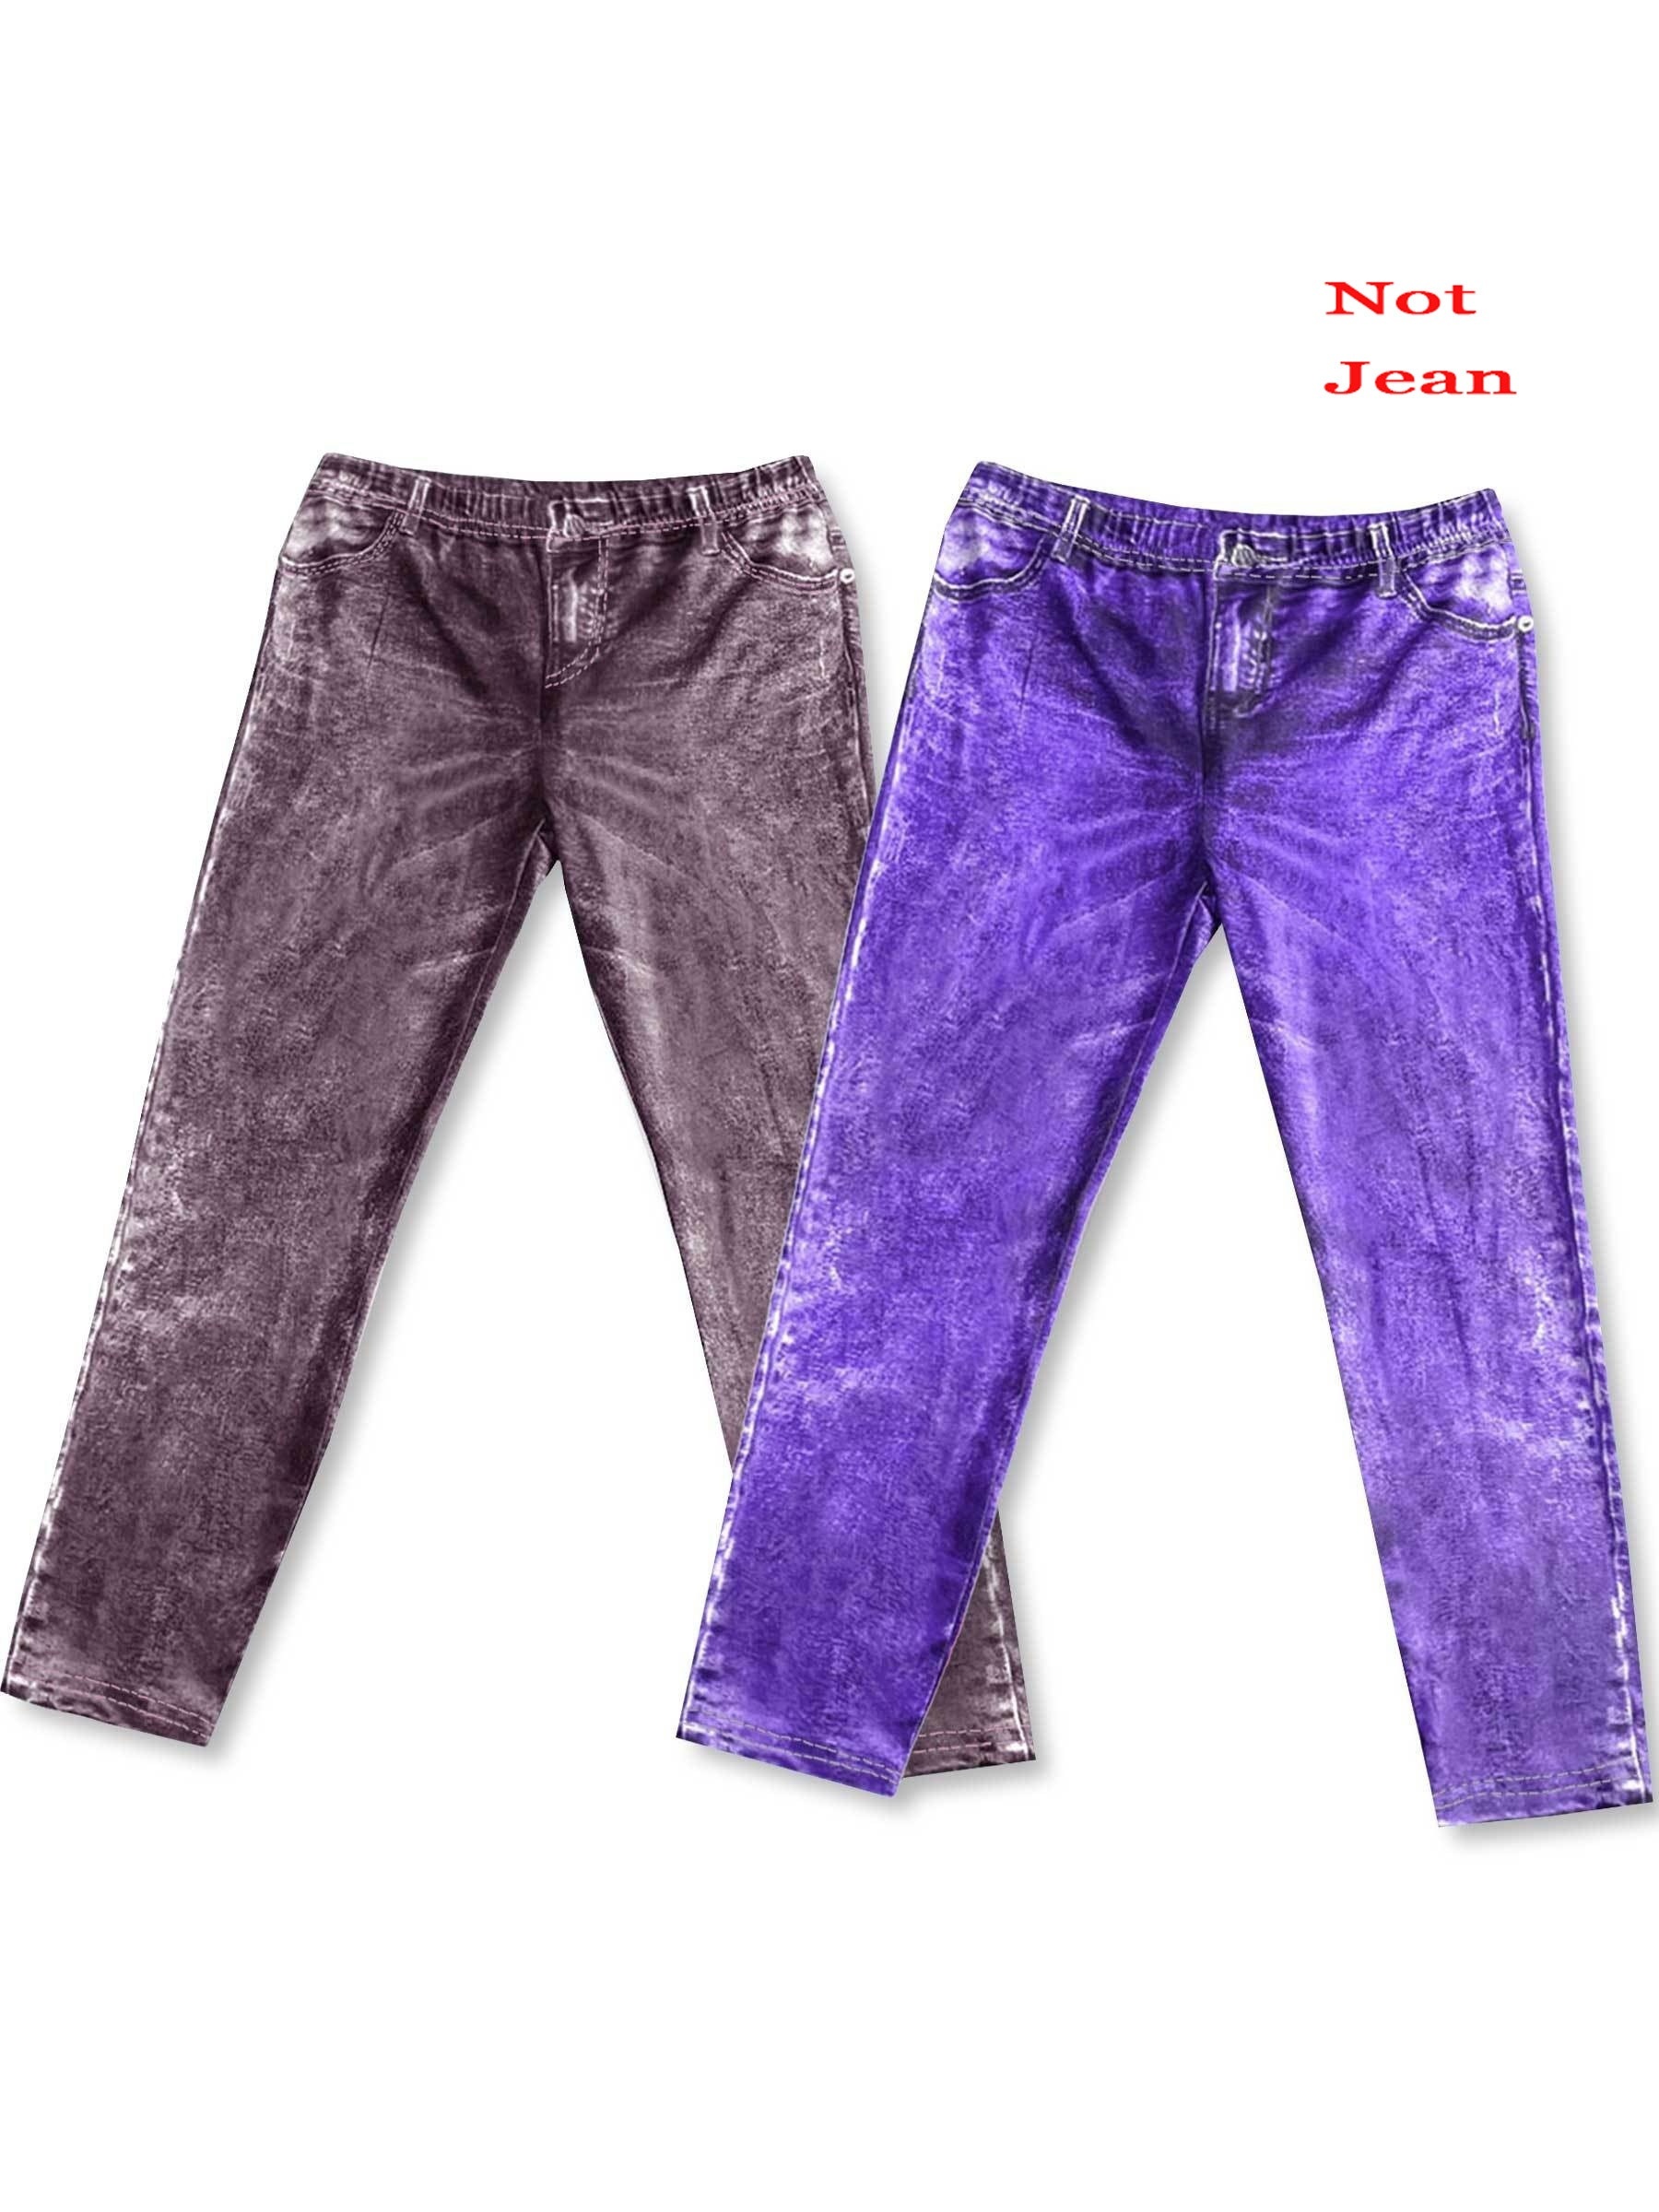 Jeans, Be The Light All-Over Print Leggings